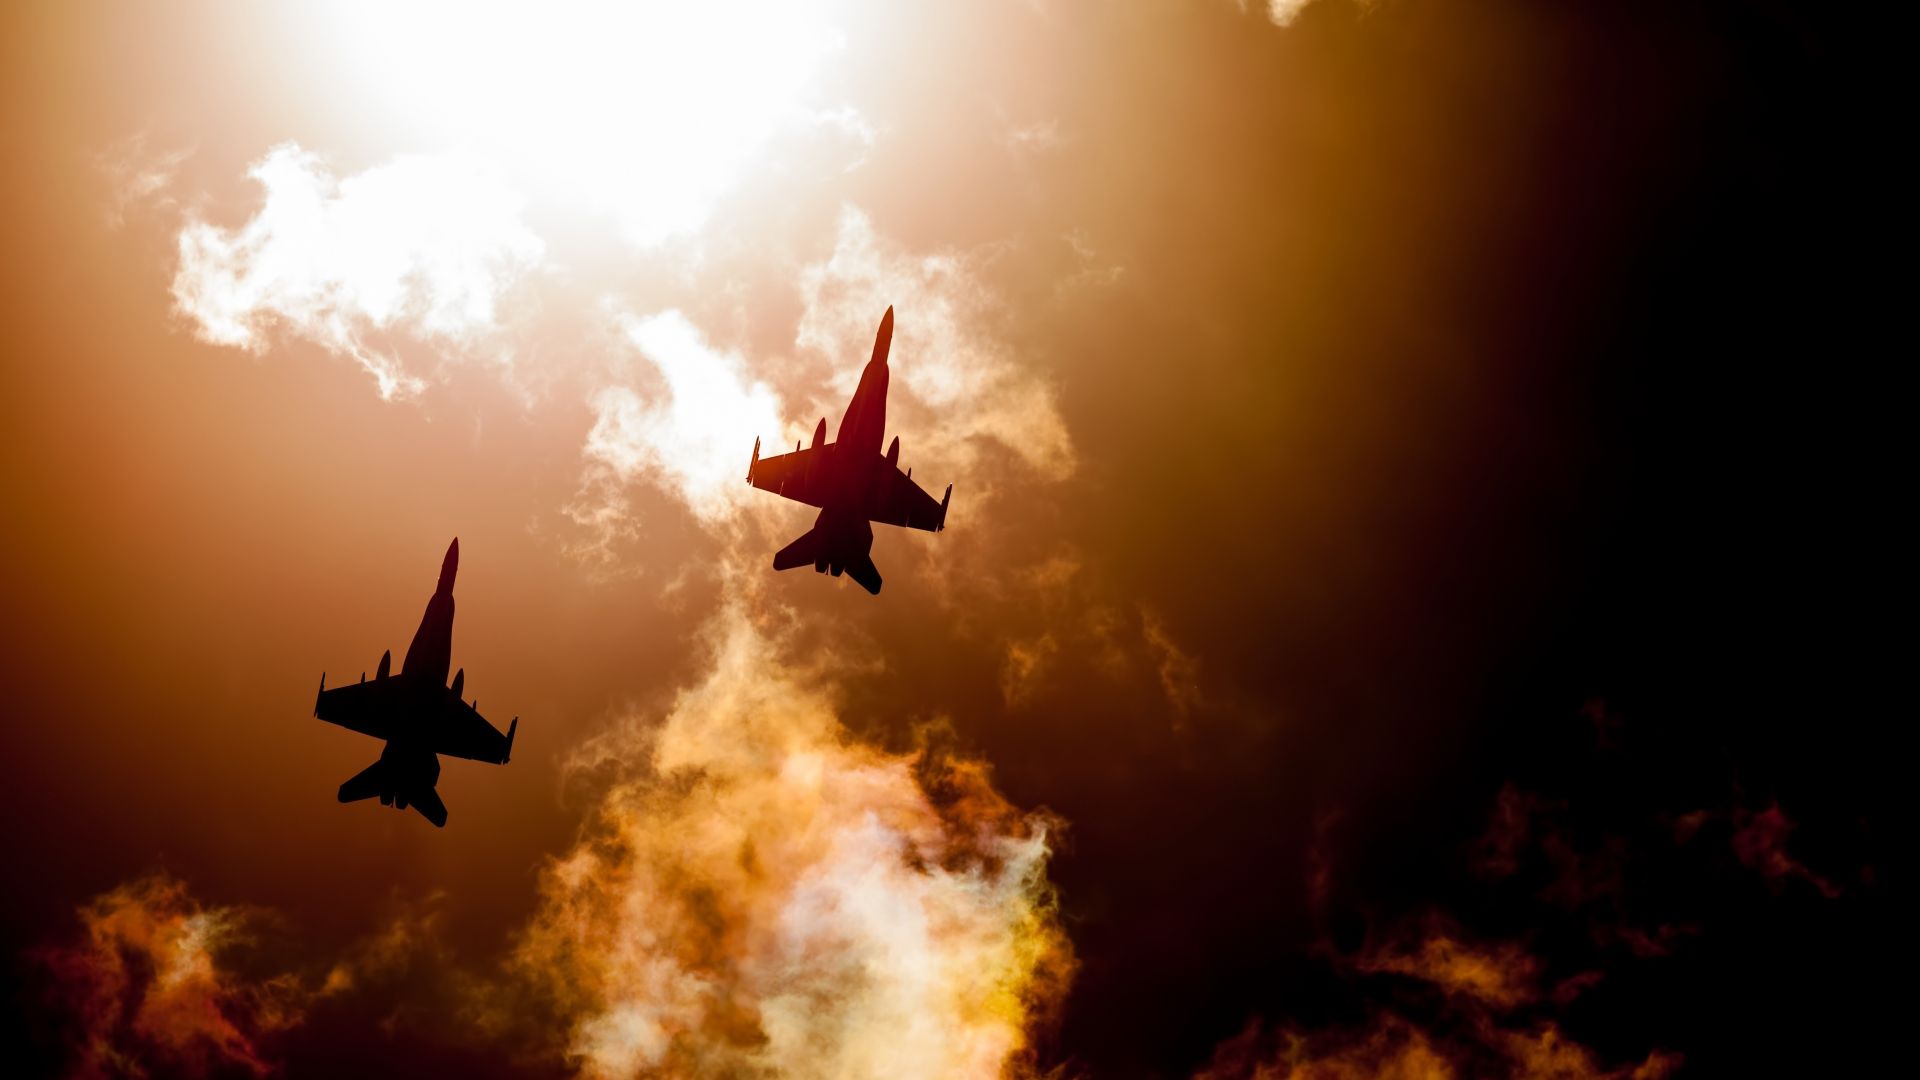 Wallpaper Raaf hornets, fighter jets, sky, clouds, 4k